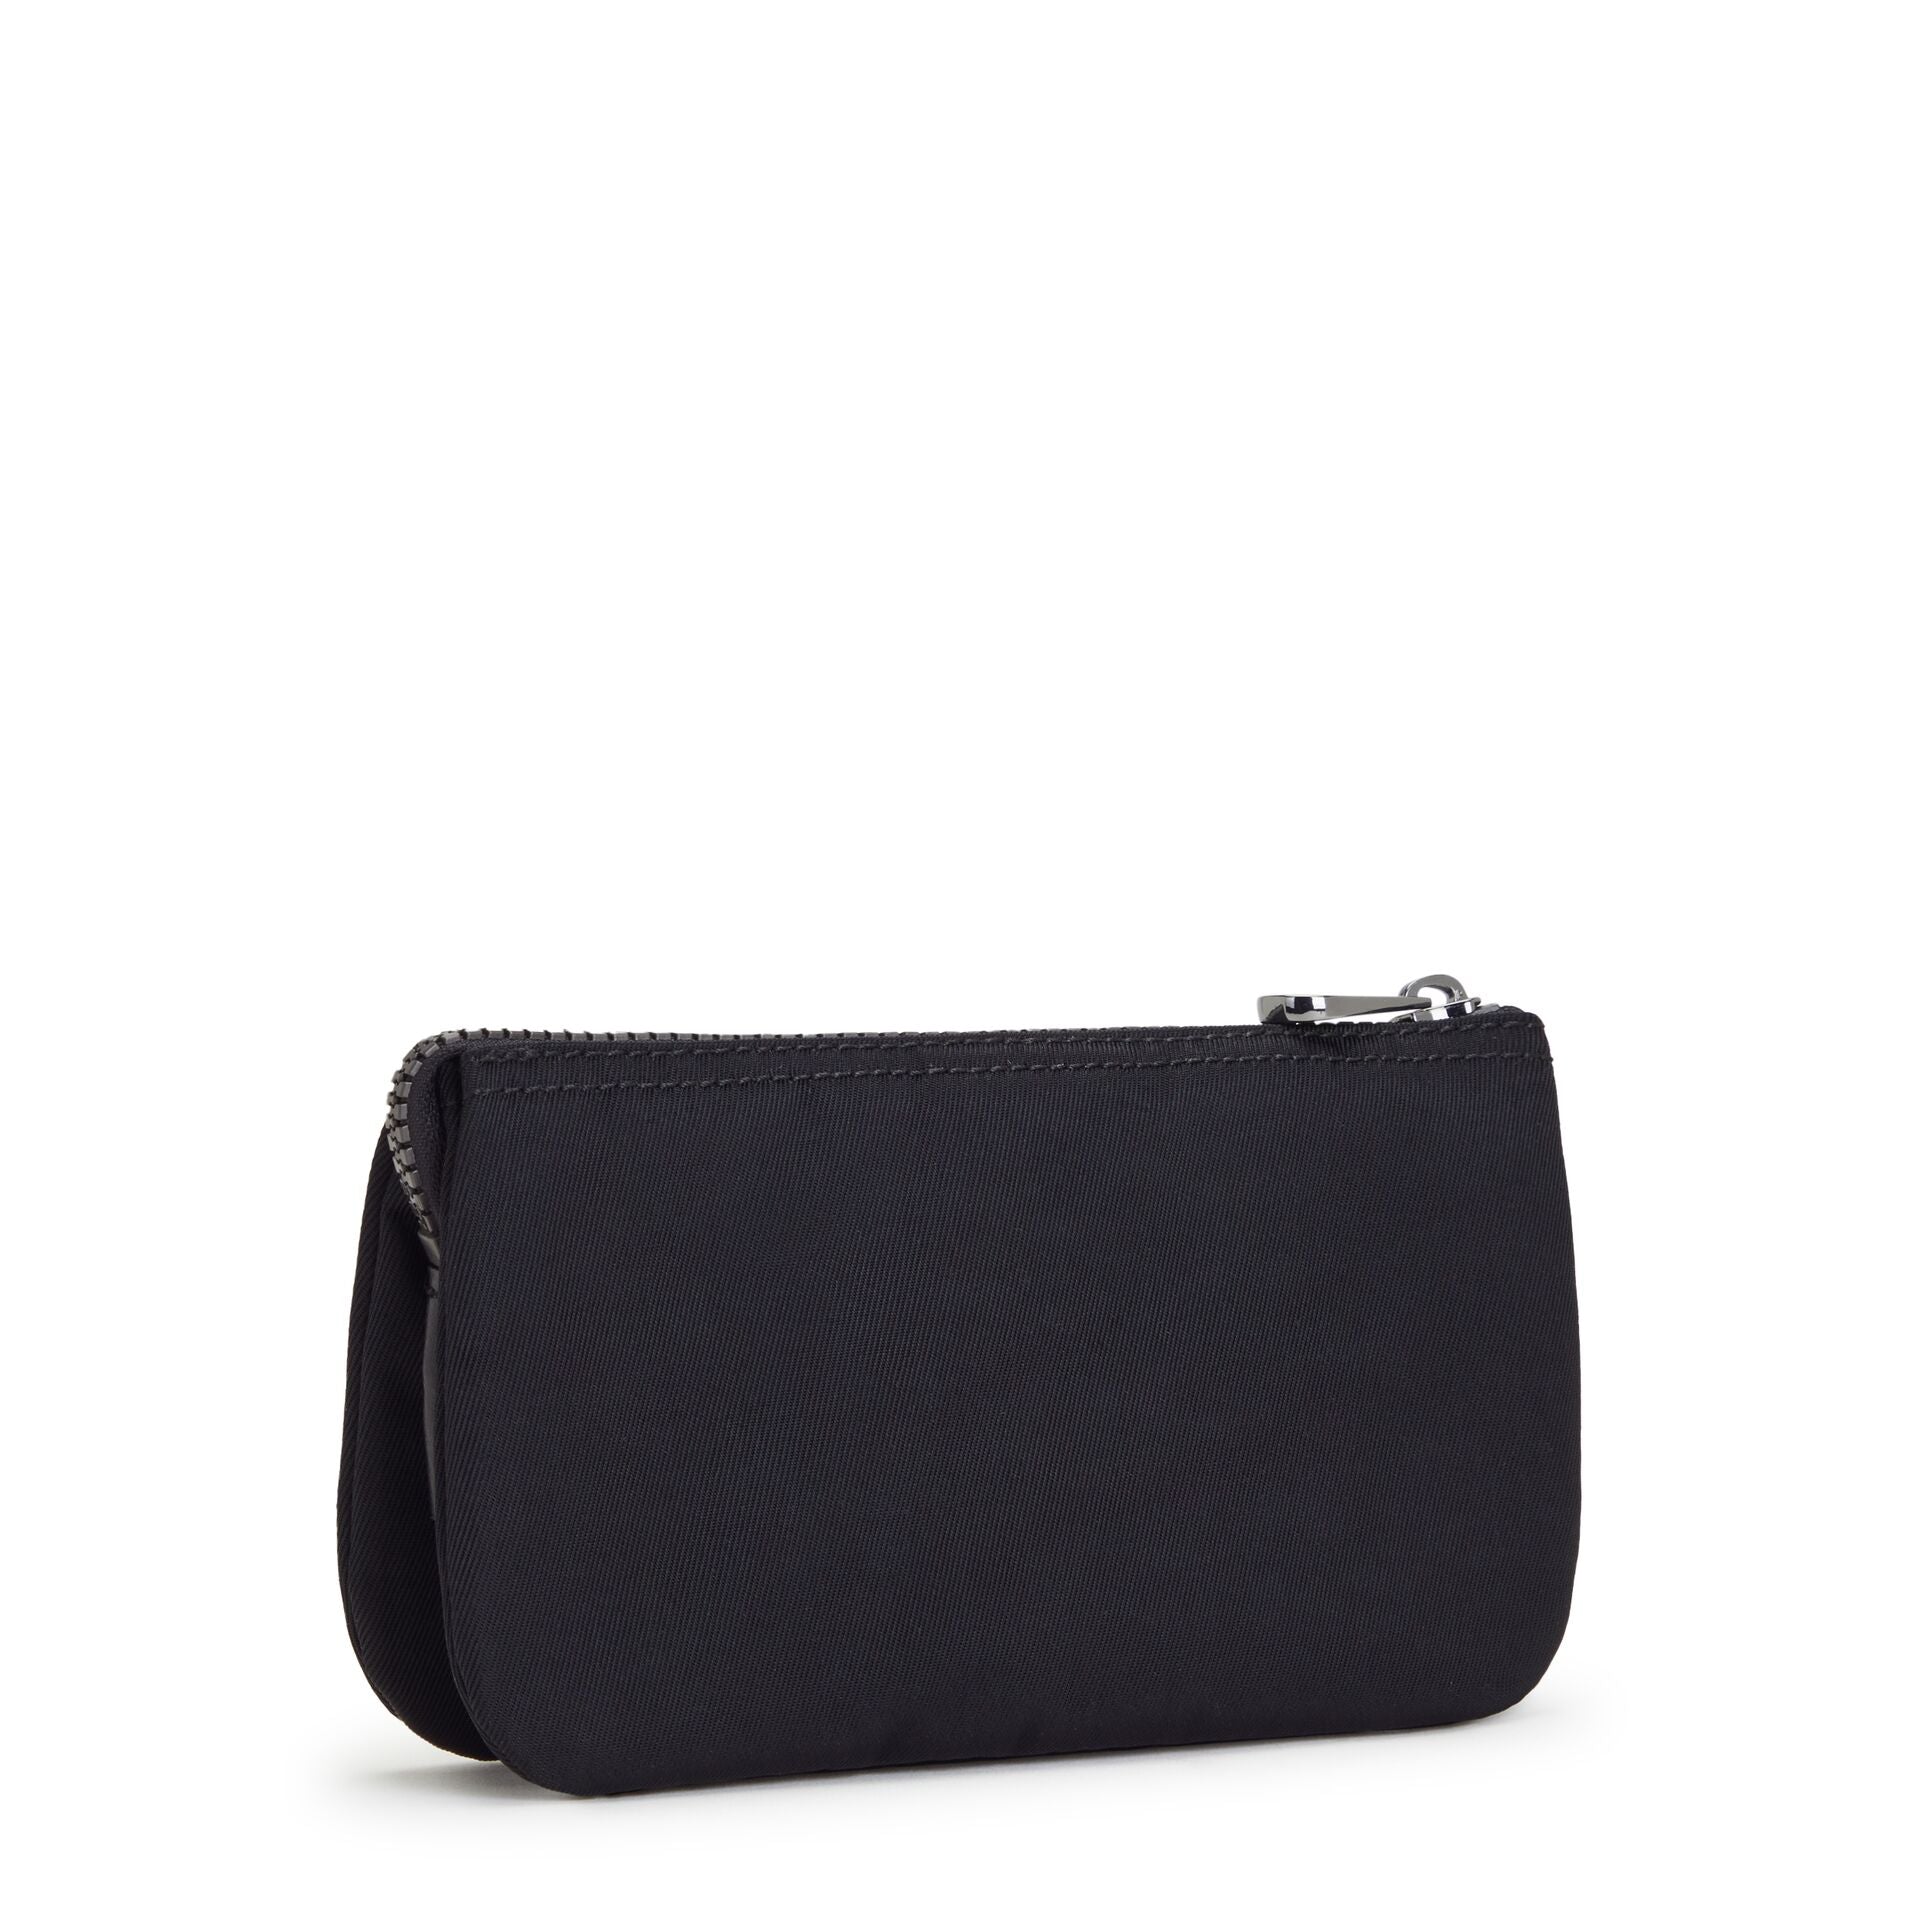 KIPLING-Creativity L-Large purse-Rich Black-I3361-53F